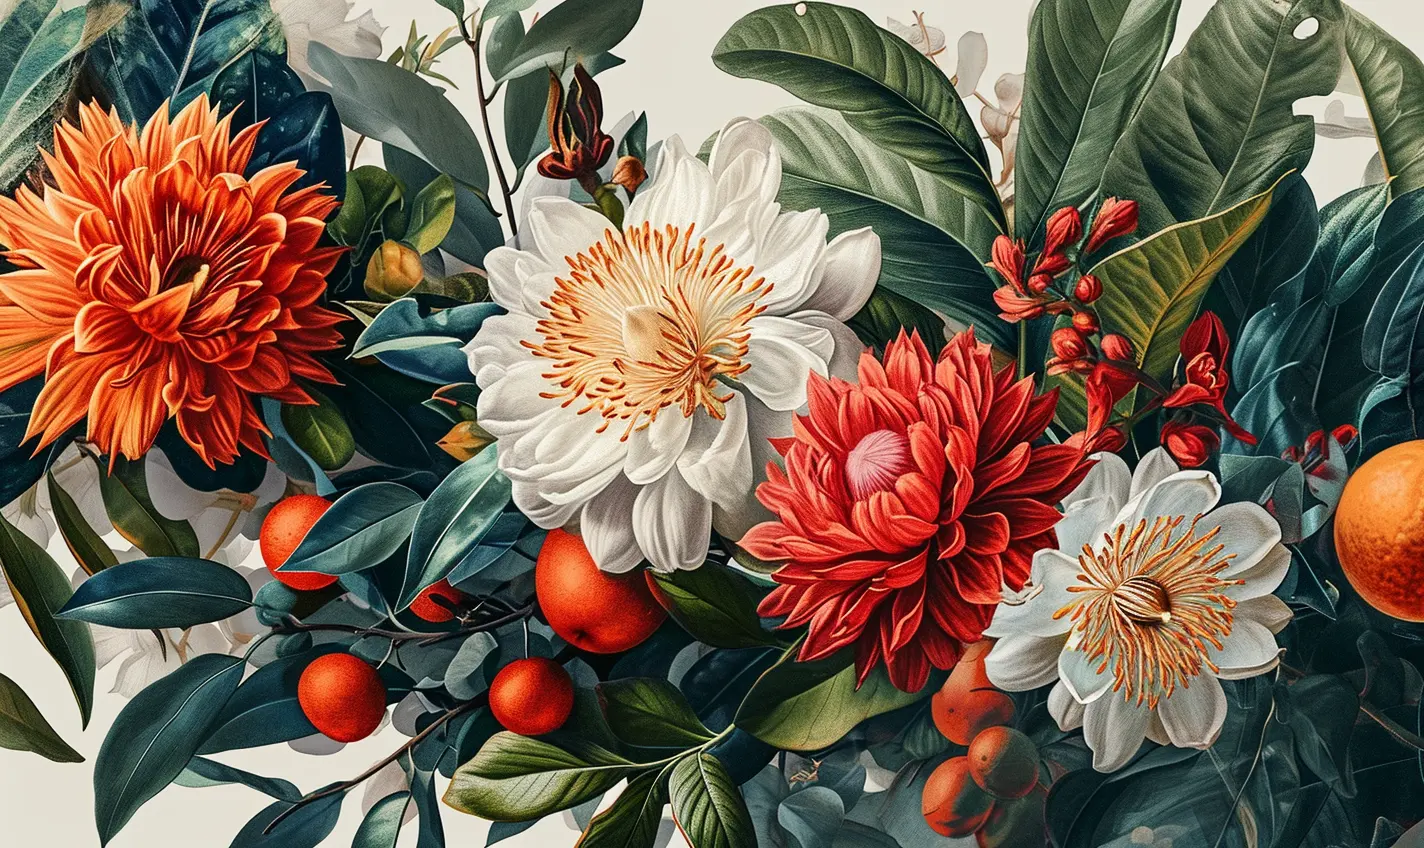 Botanical illustration of flowers and fruits